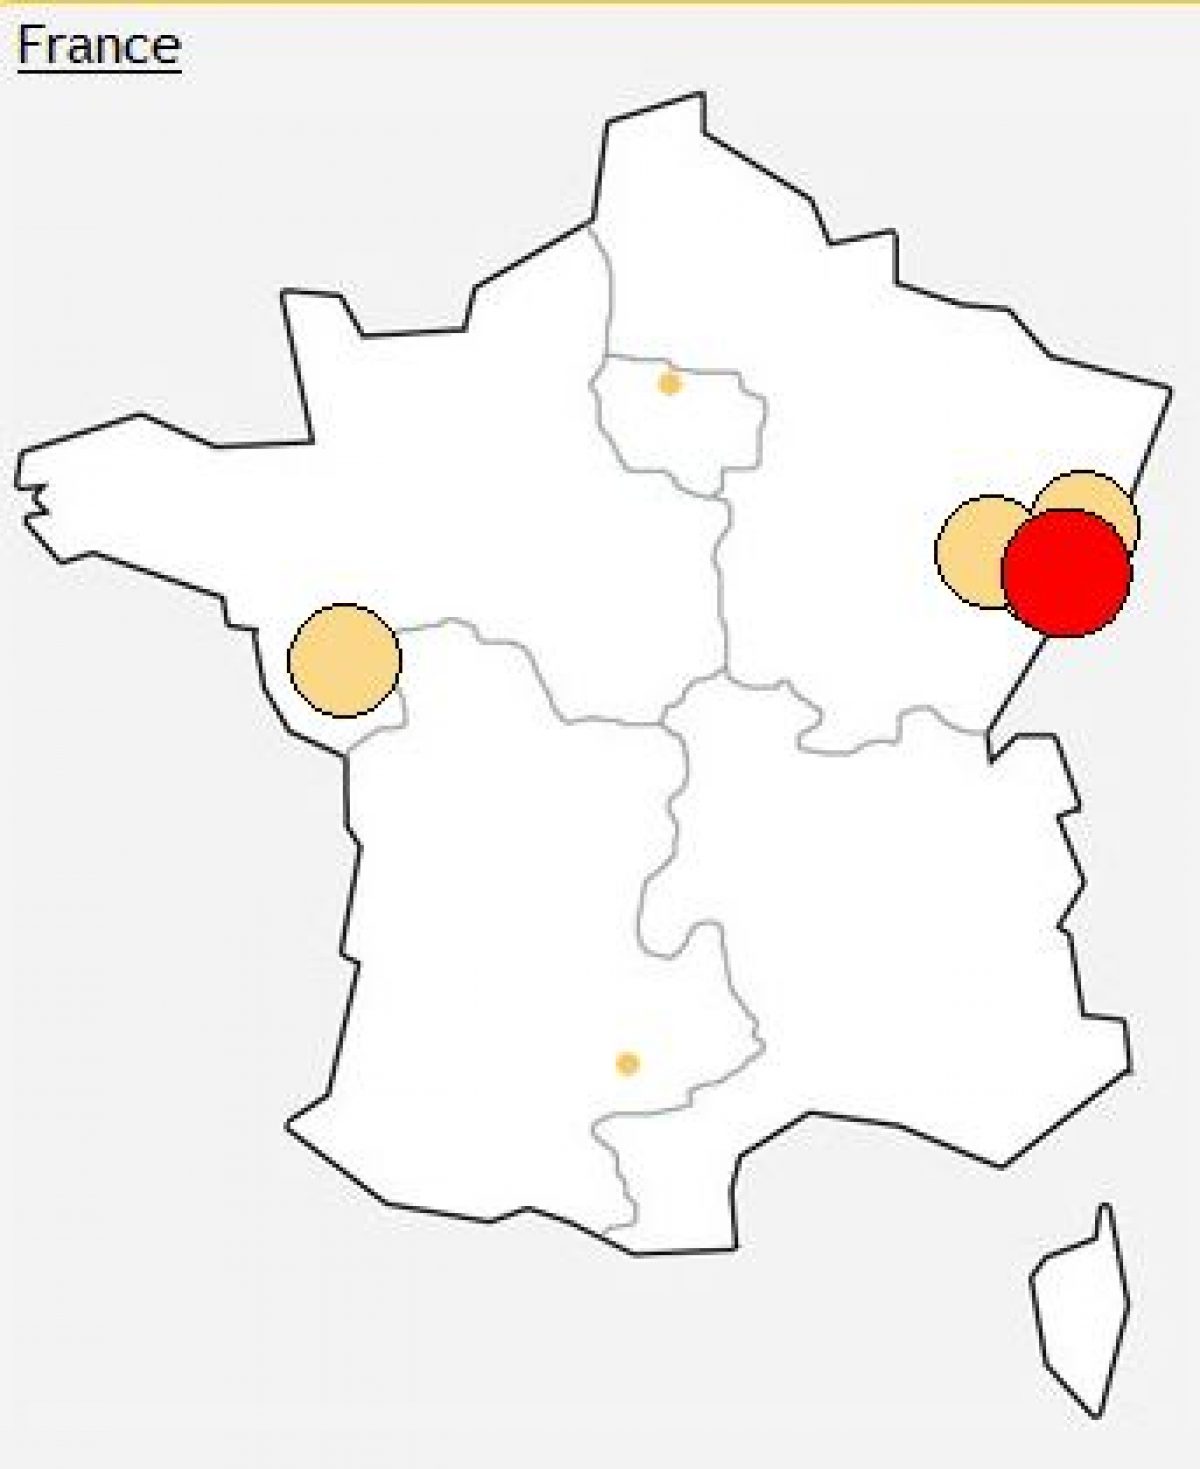 [MàJ] Free: Incidents sur de nombreux DSLAM de la Franche Comté et l’Alsace